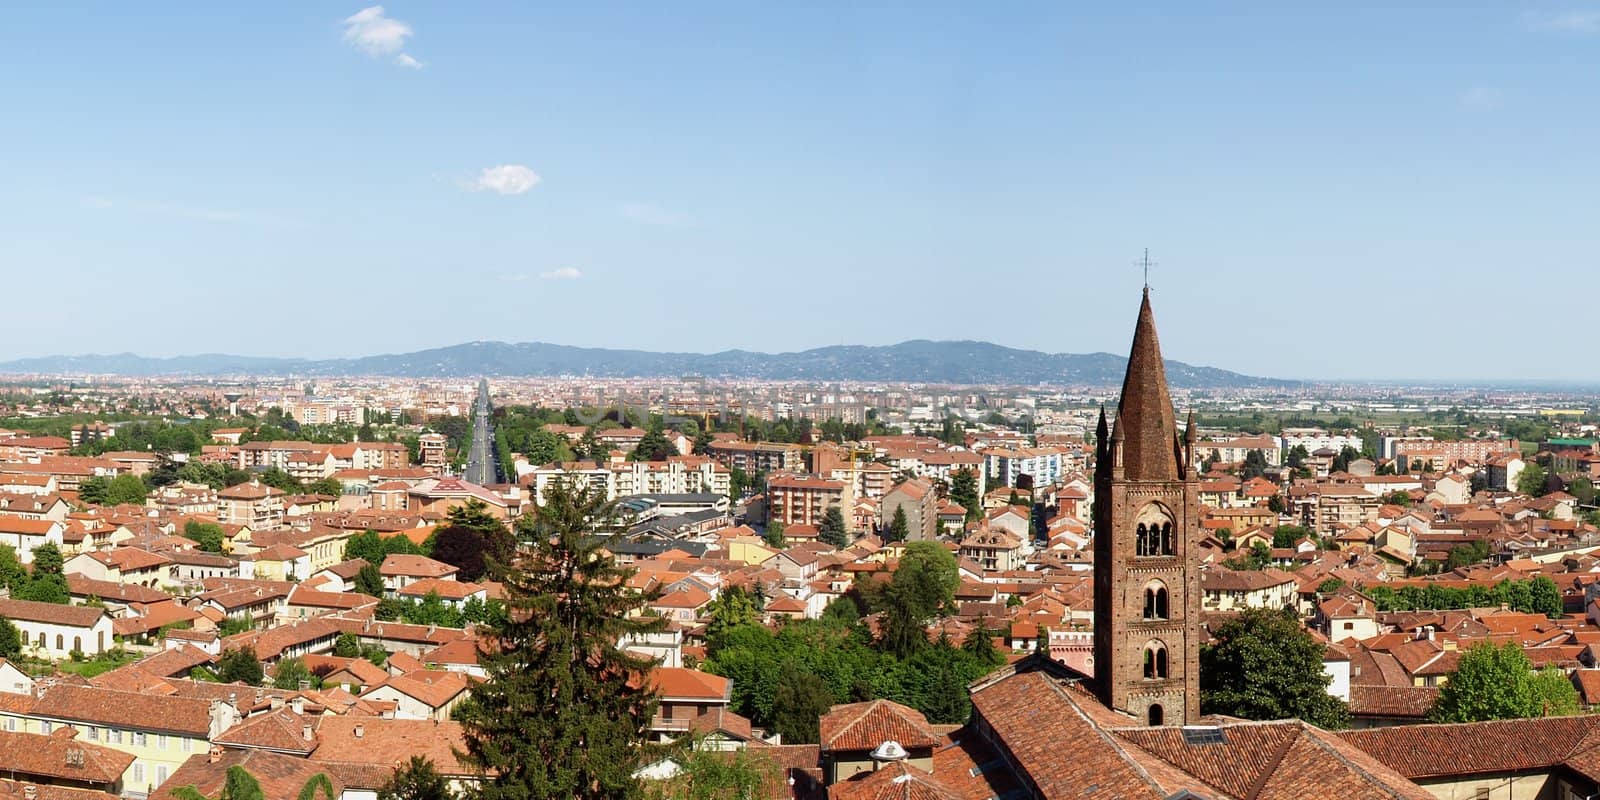 Turin panorama seen from the Castello di Rivoli hill